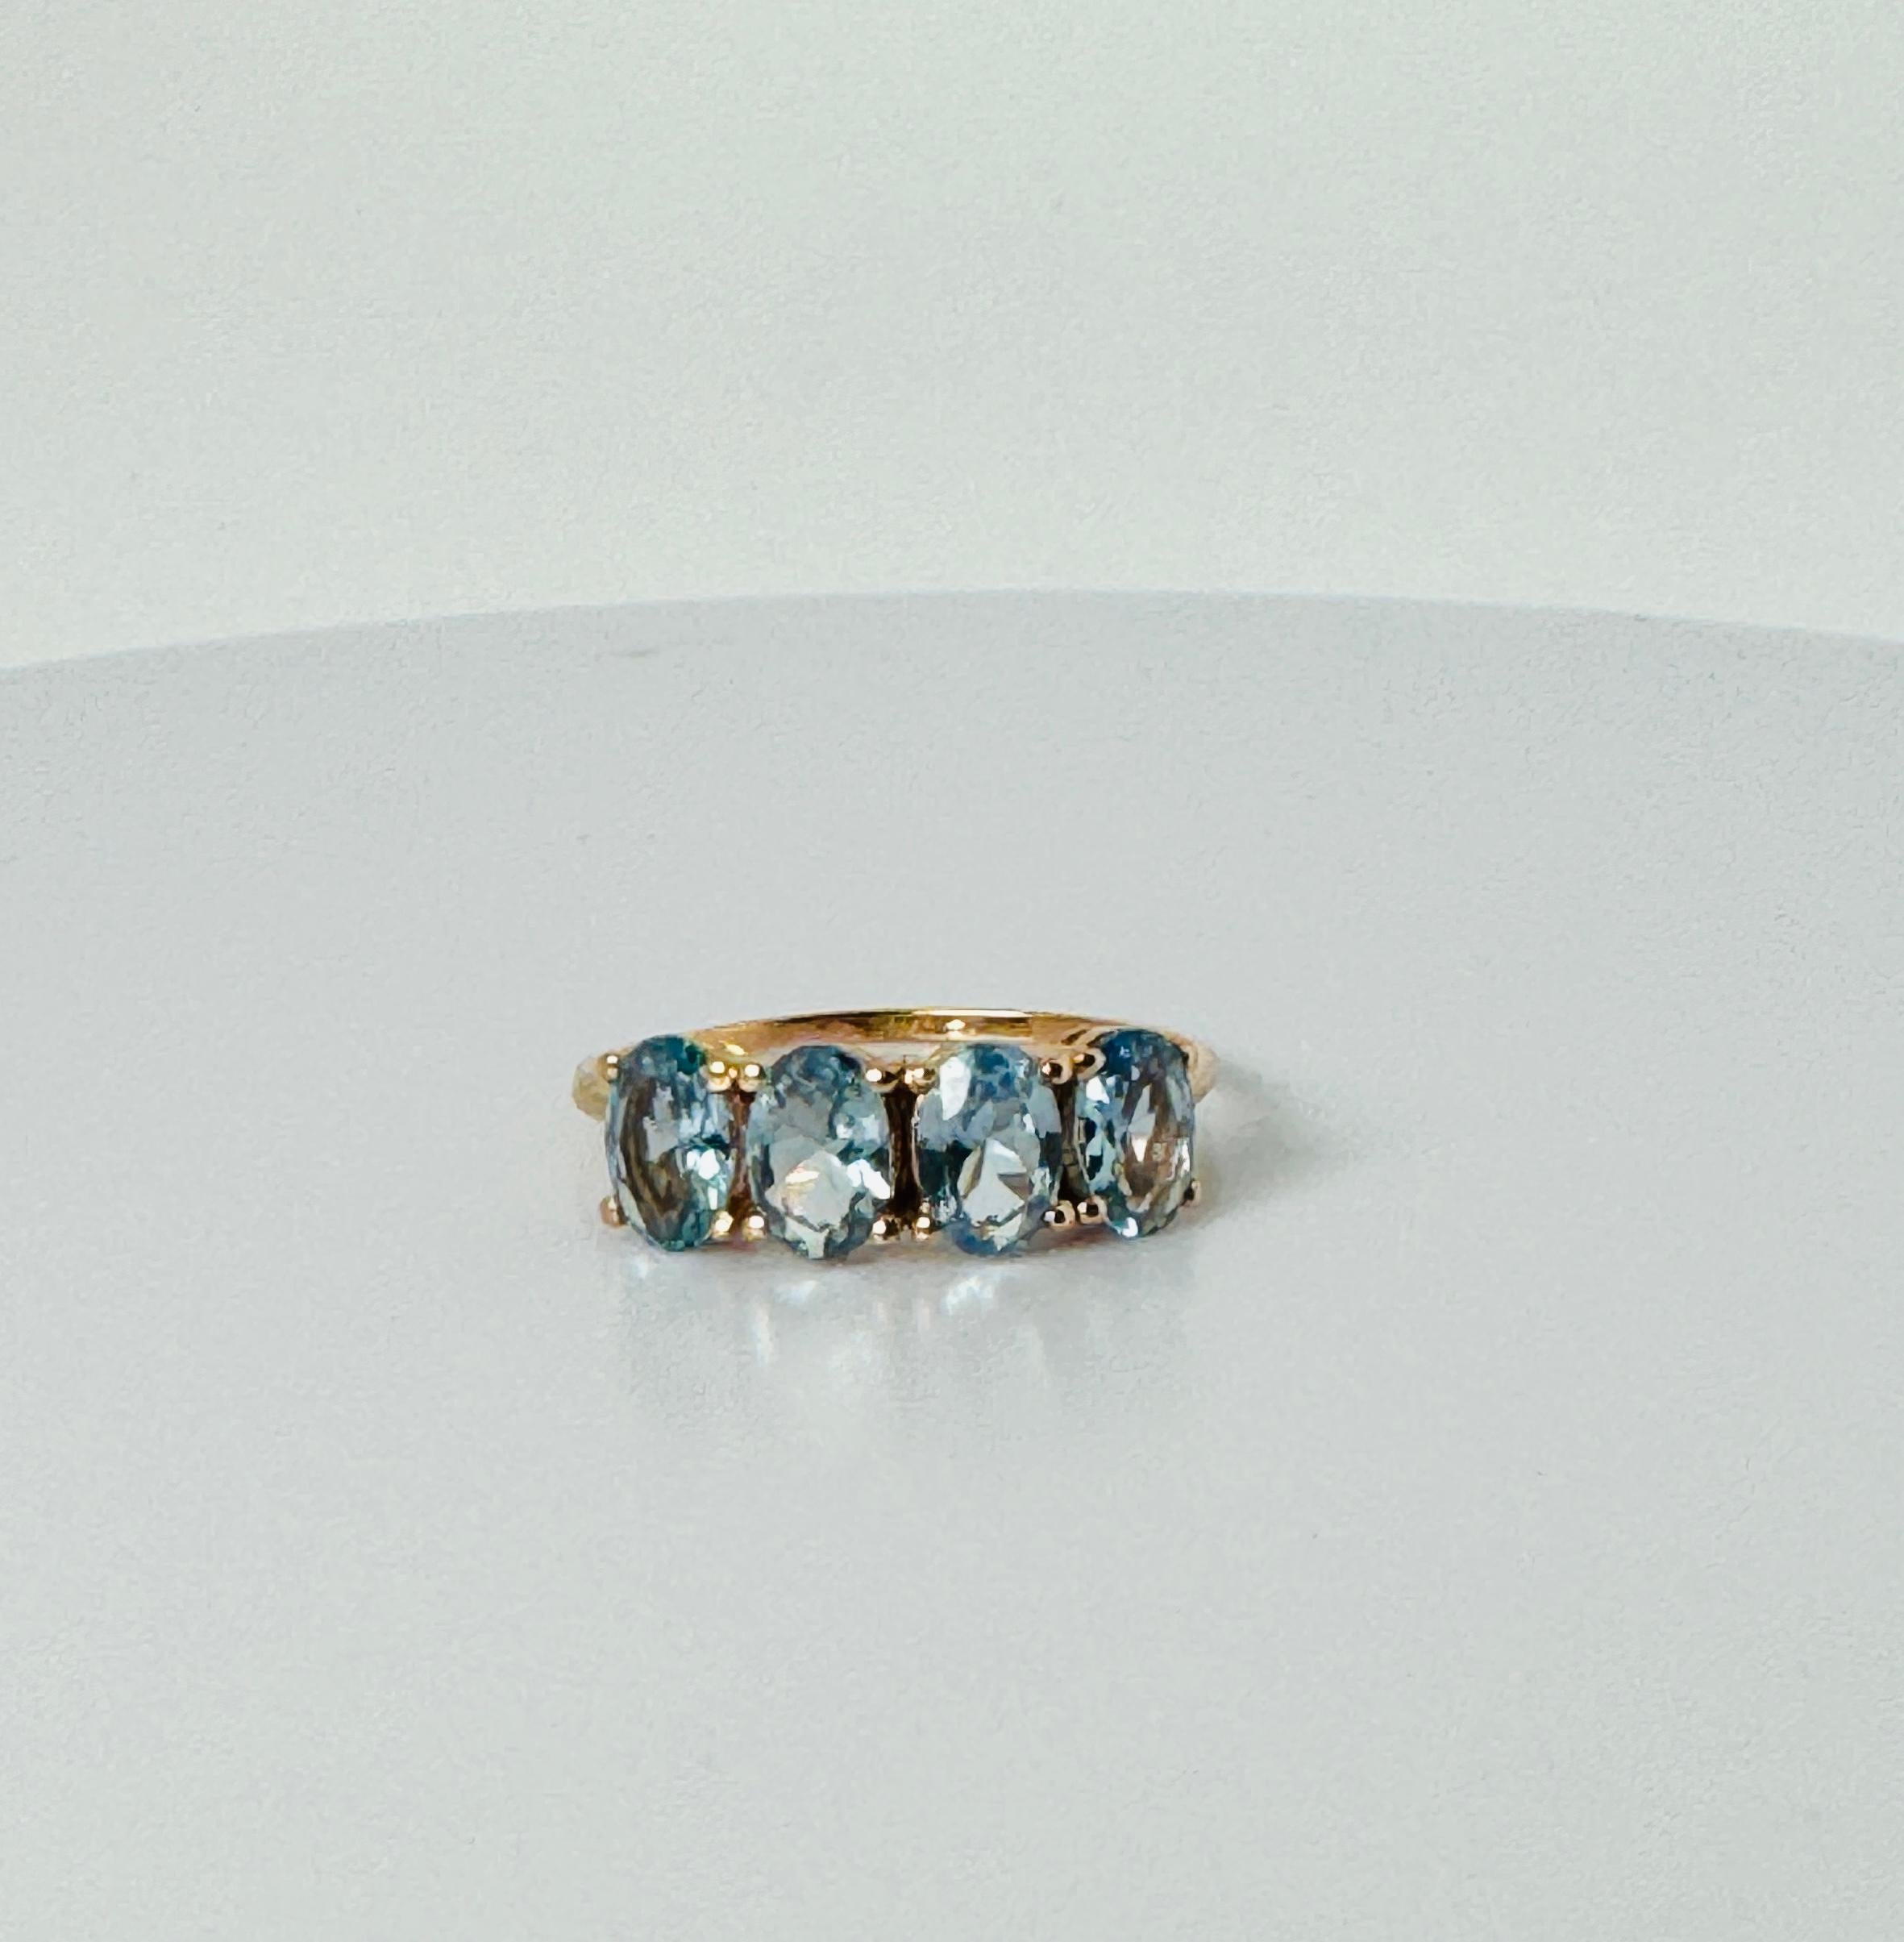 Vintage Ring mit 4 schönen ovalen facettierten Aquamarinen.  Dieses Juwel ist aus 18 Karat Rotgold gefertigt. Die Aquamarine sind wirklich raffiniert und werden an Ihrem Finger mit Sicherheit glänzen. Dieses Schmuckstück mit europäischem Ursprung